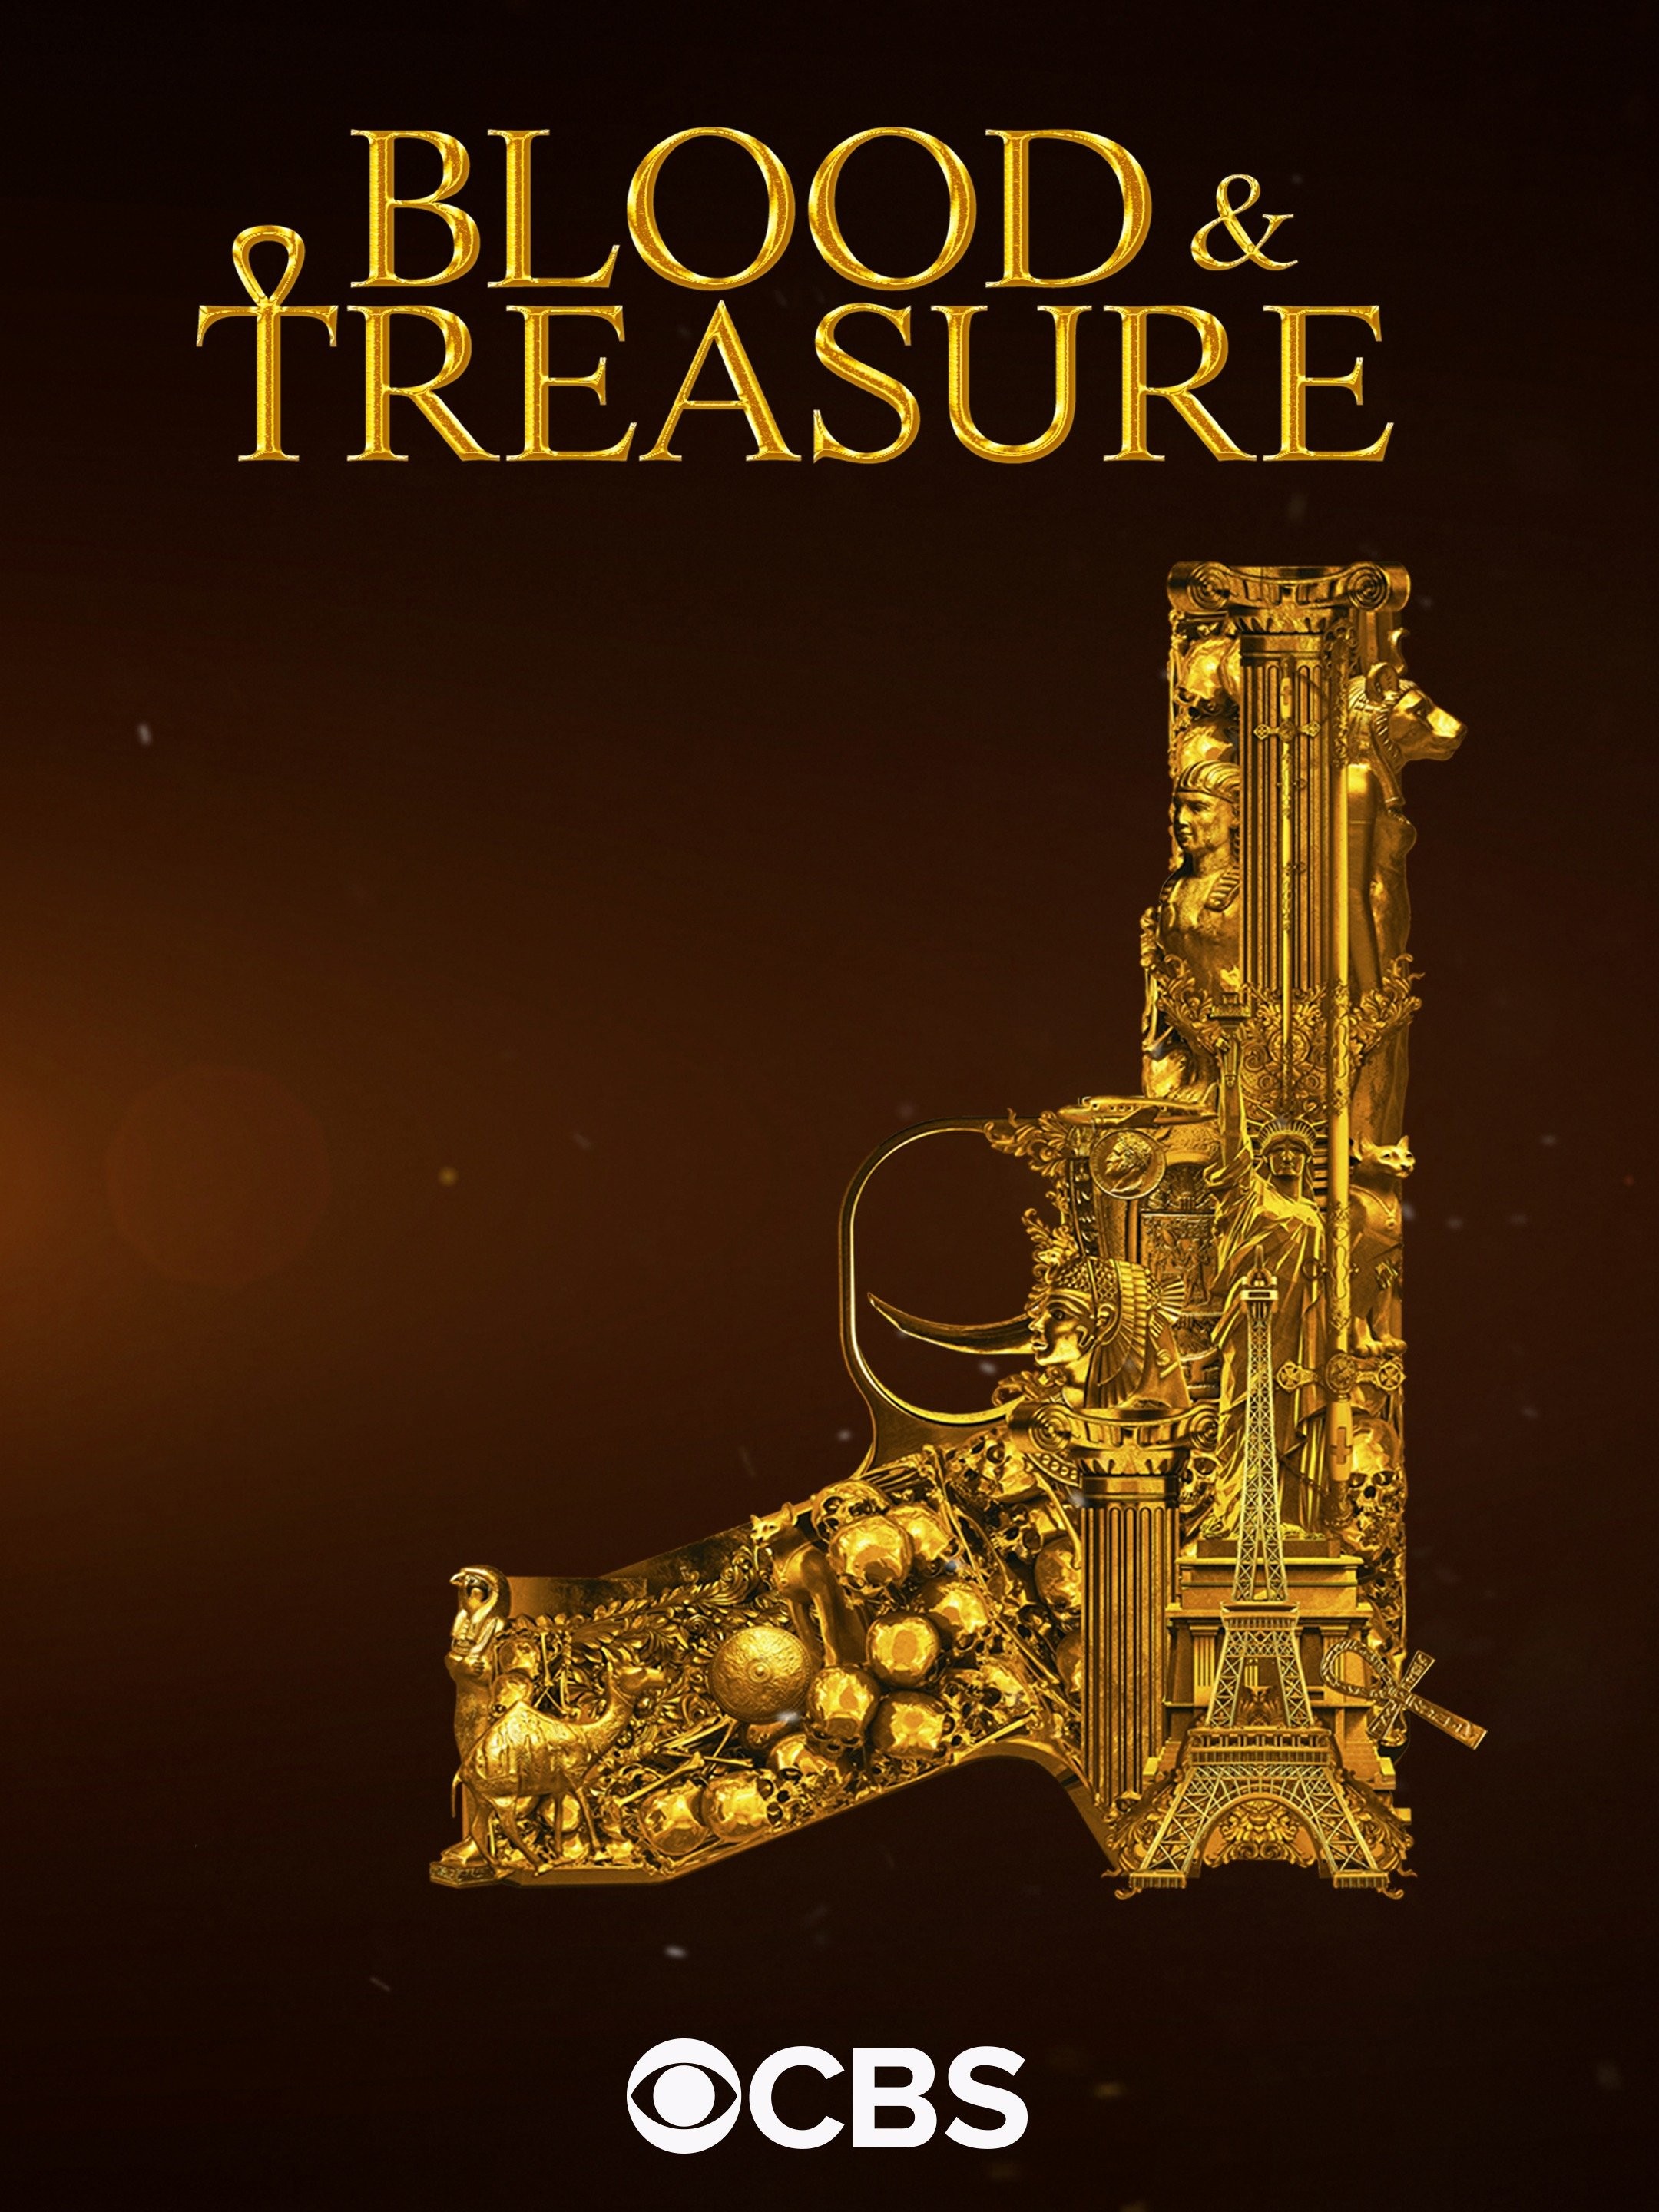 Bloody Treasure Codes - December 2023 